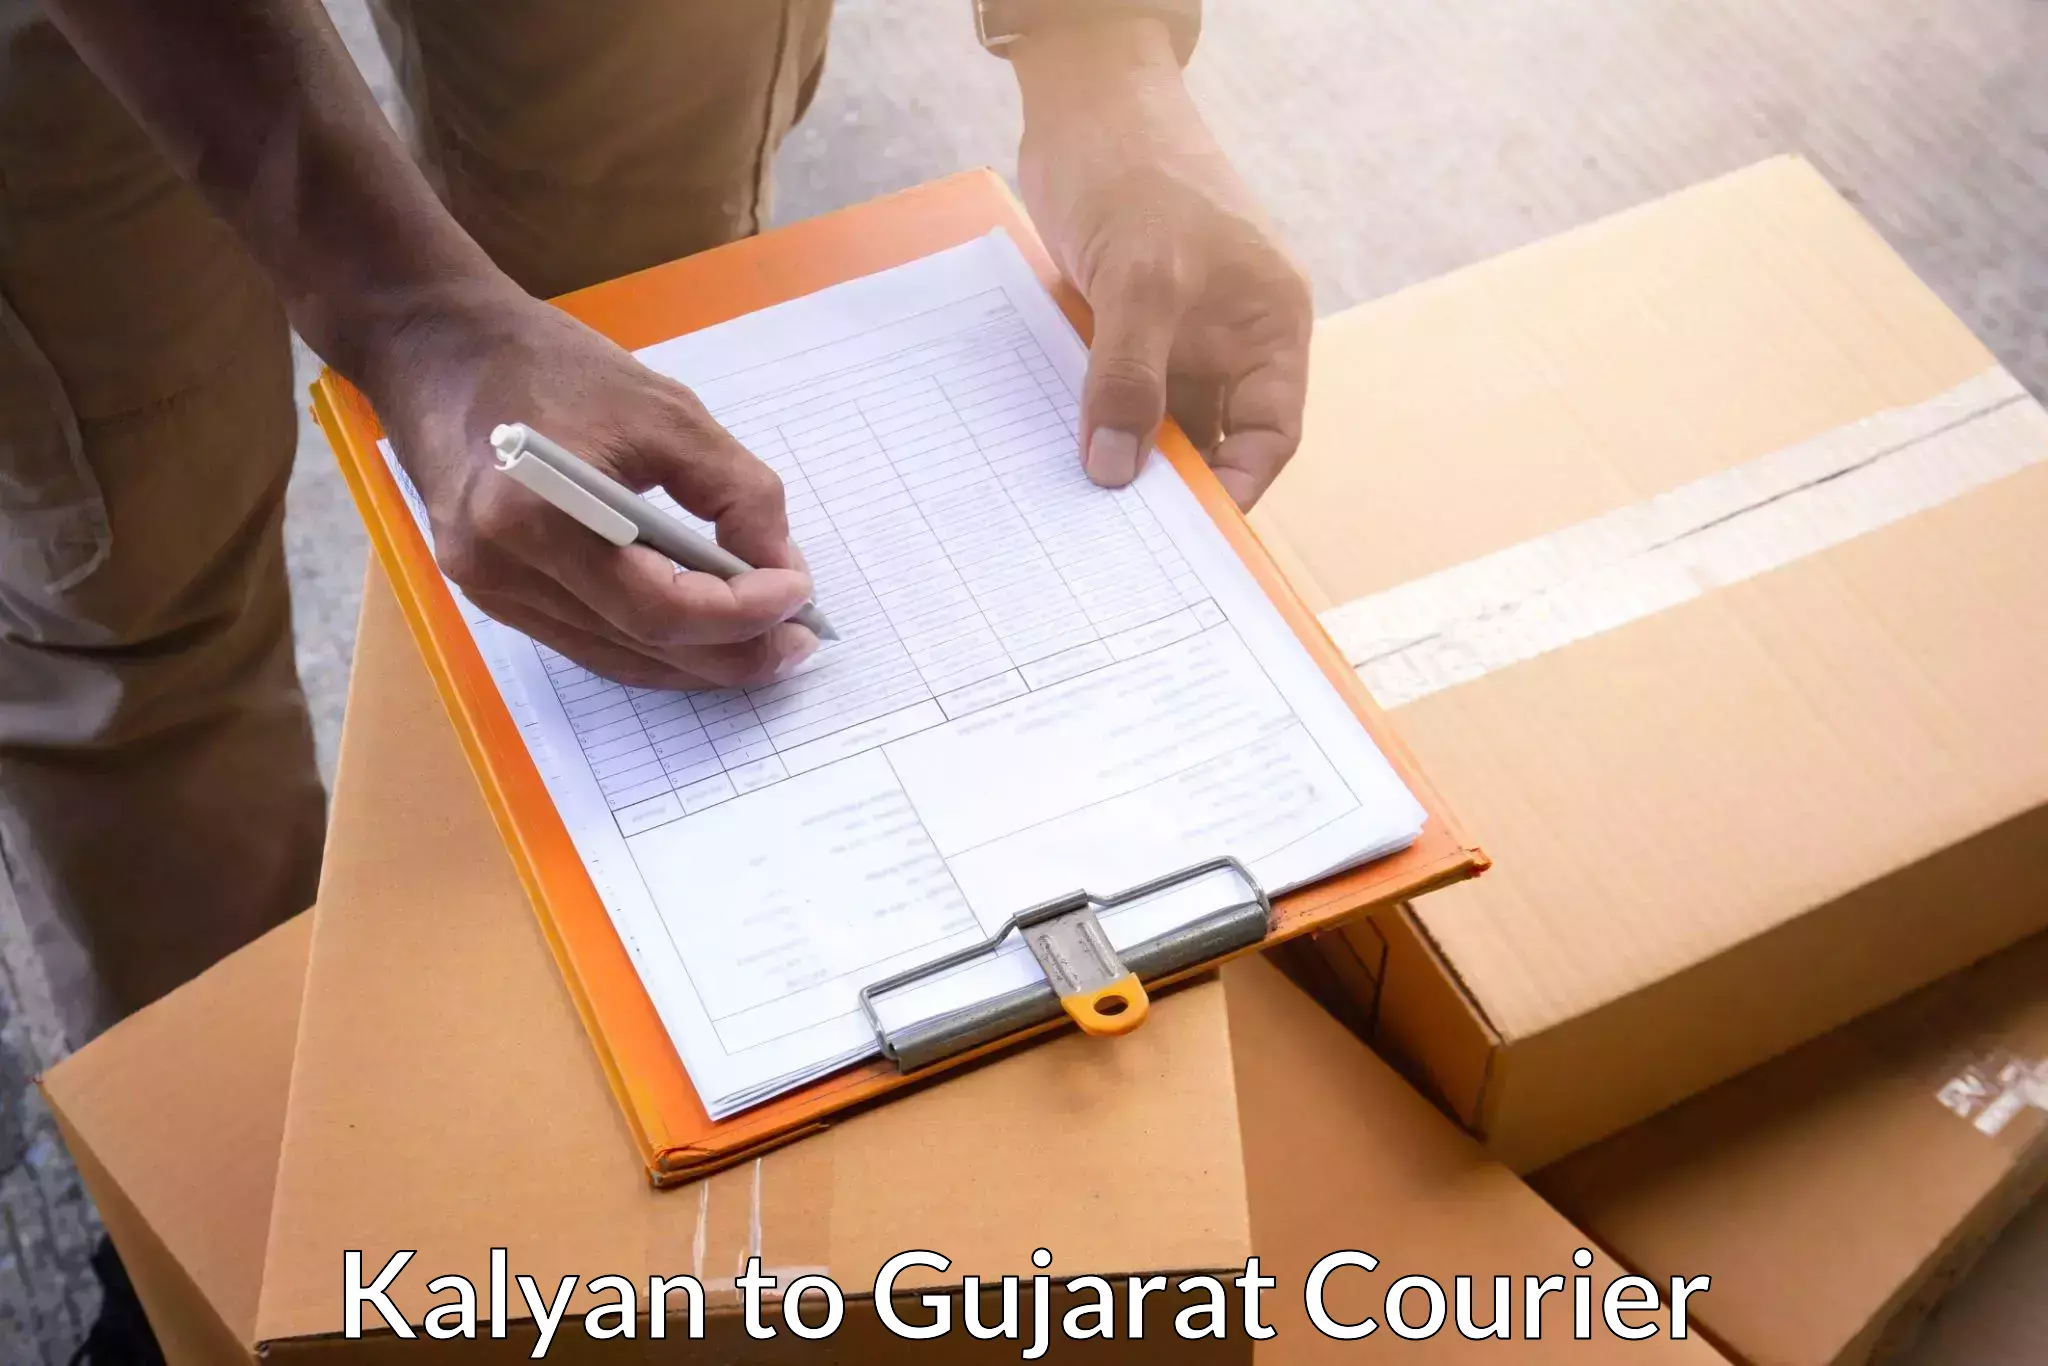 Courier insurance Kalyan to Dharmasala